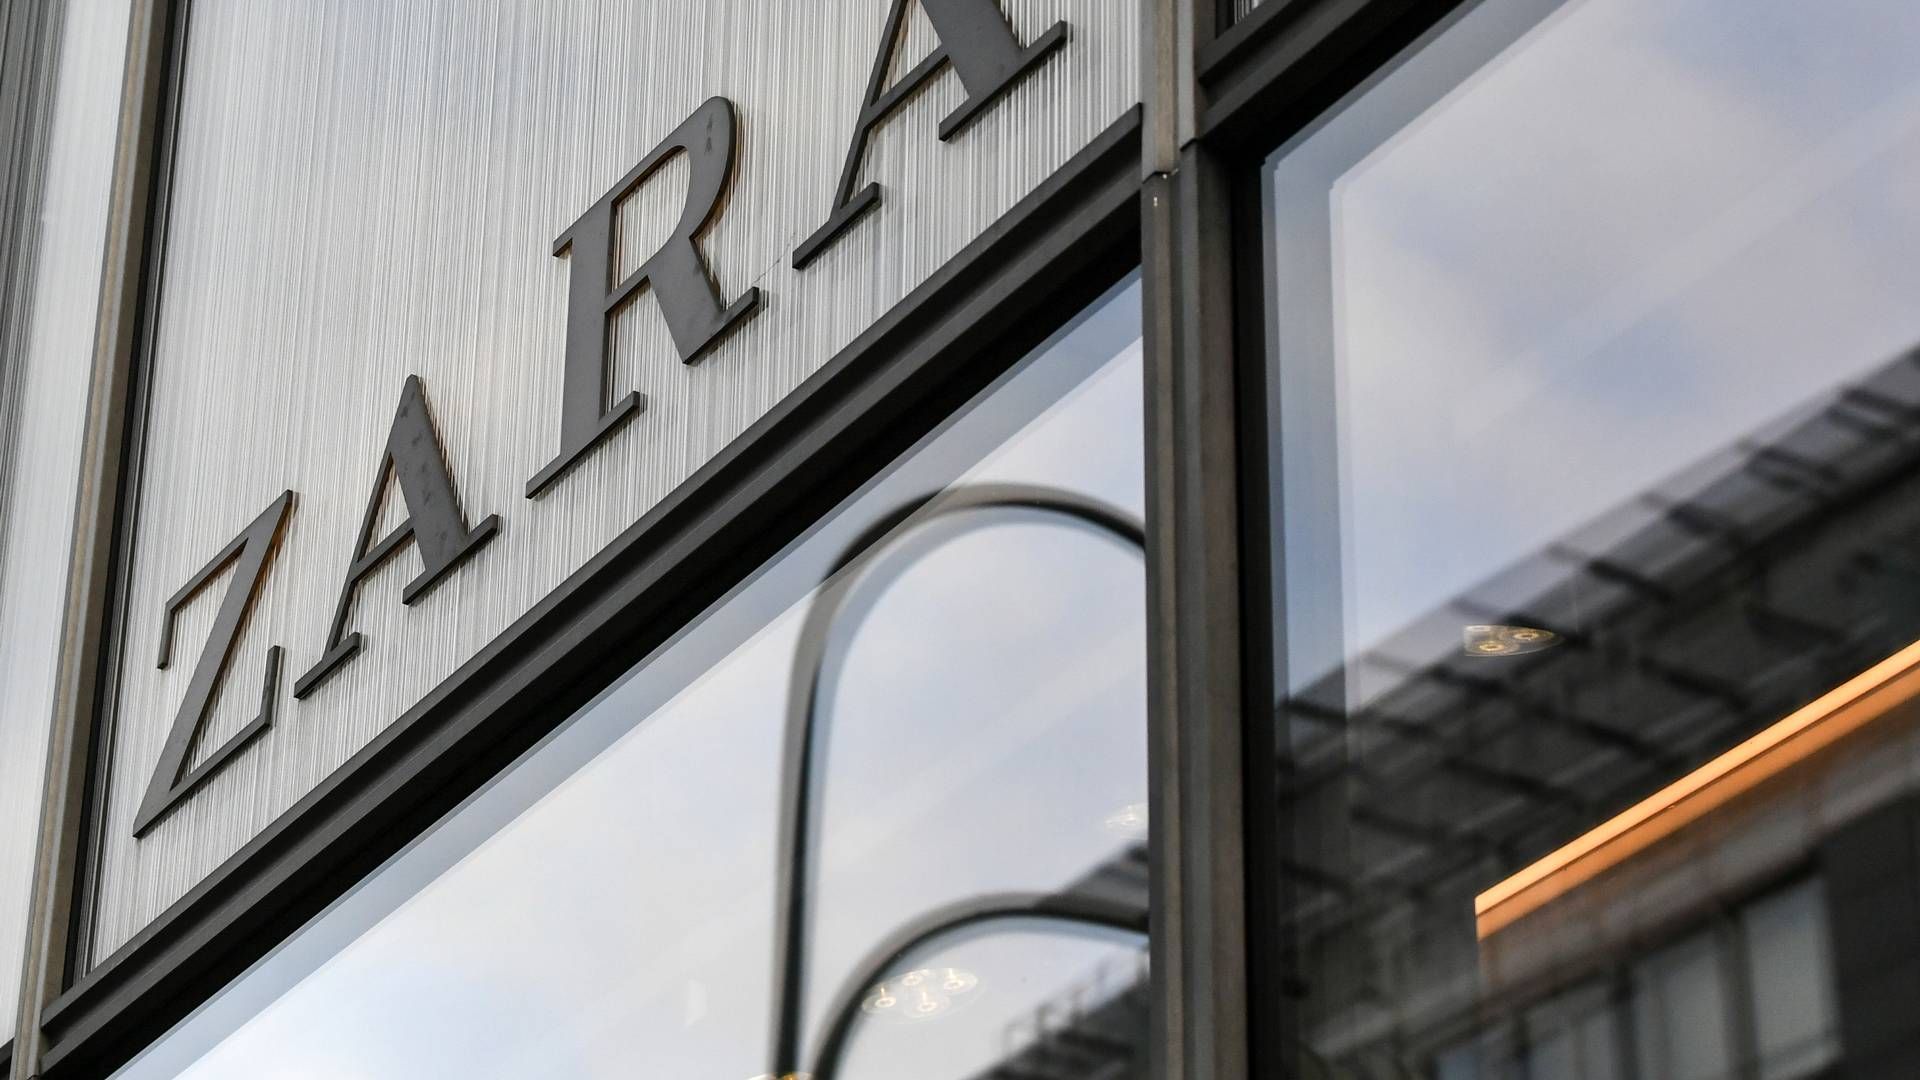 Zara er ejet af spanske Inditex, der er en af verdens største modekoncerner.